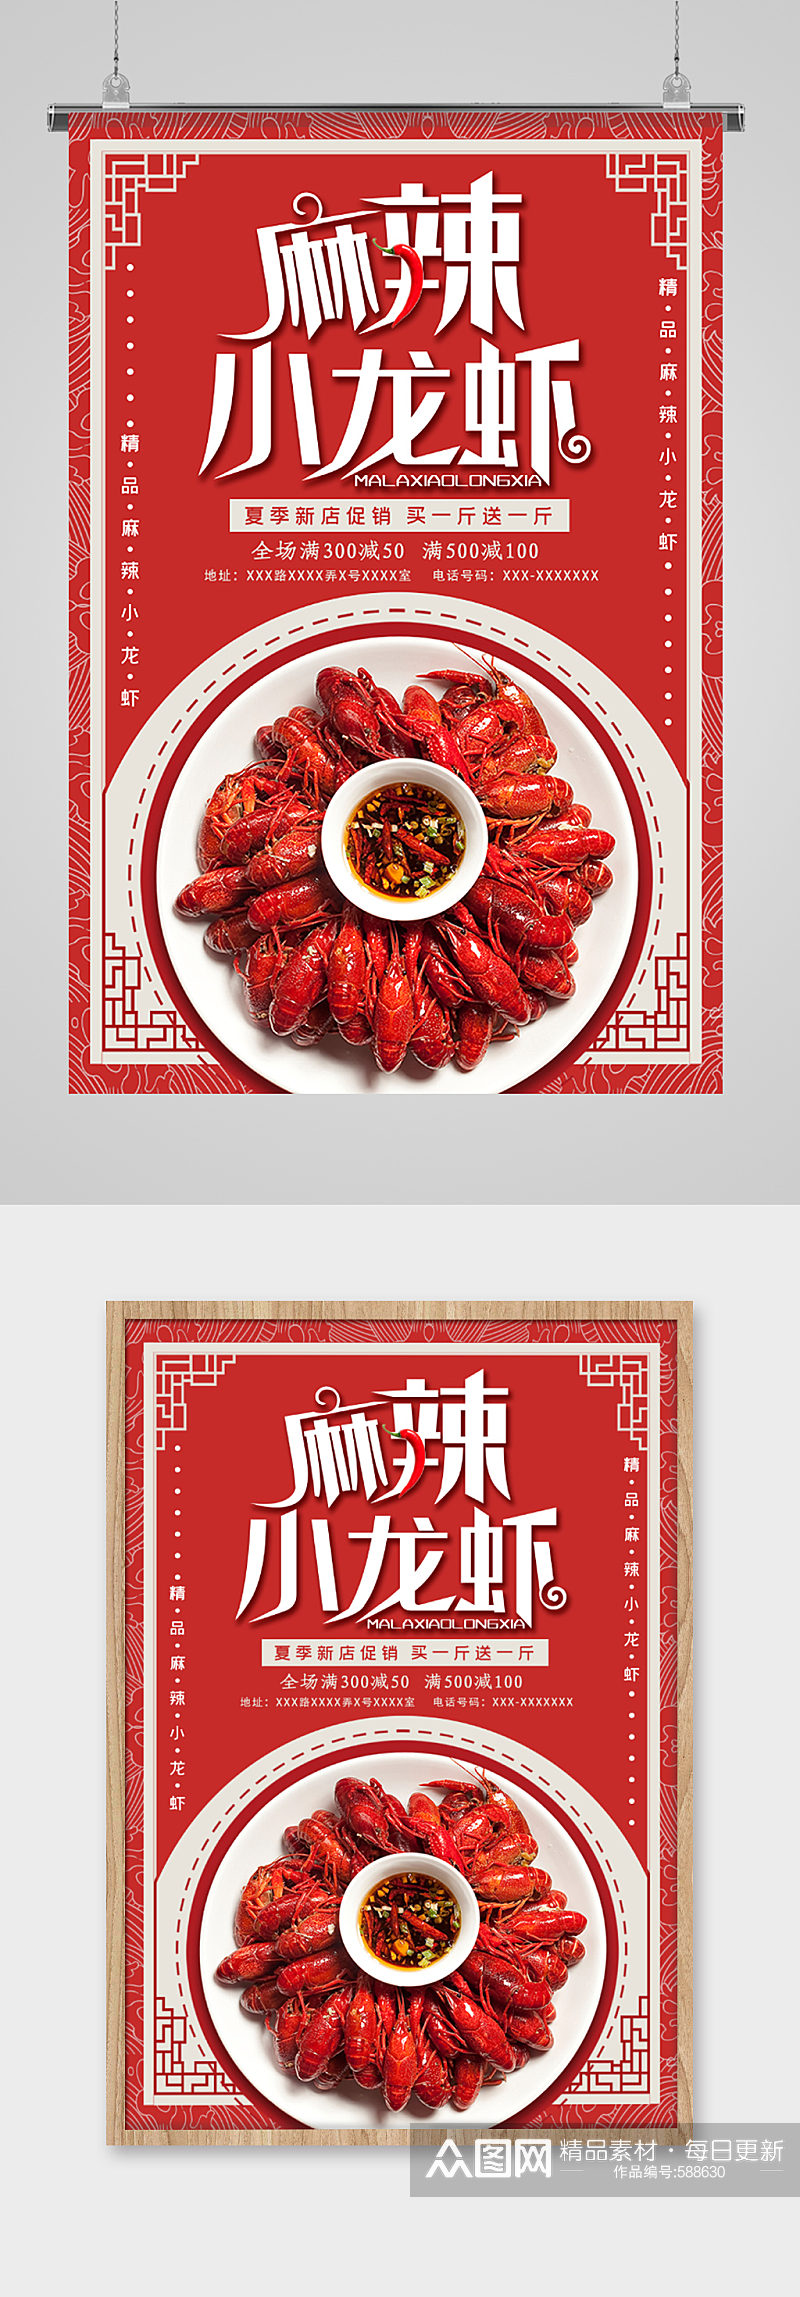 麻辣小龙虾特色美食海报素材